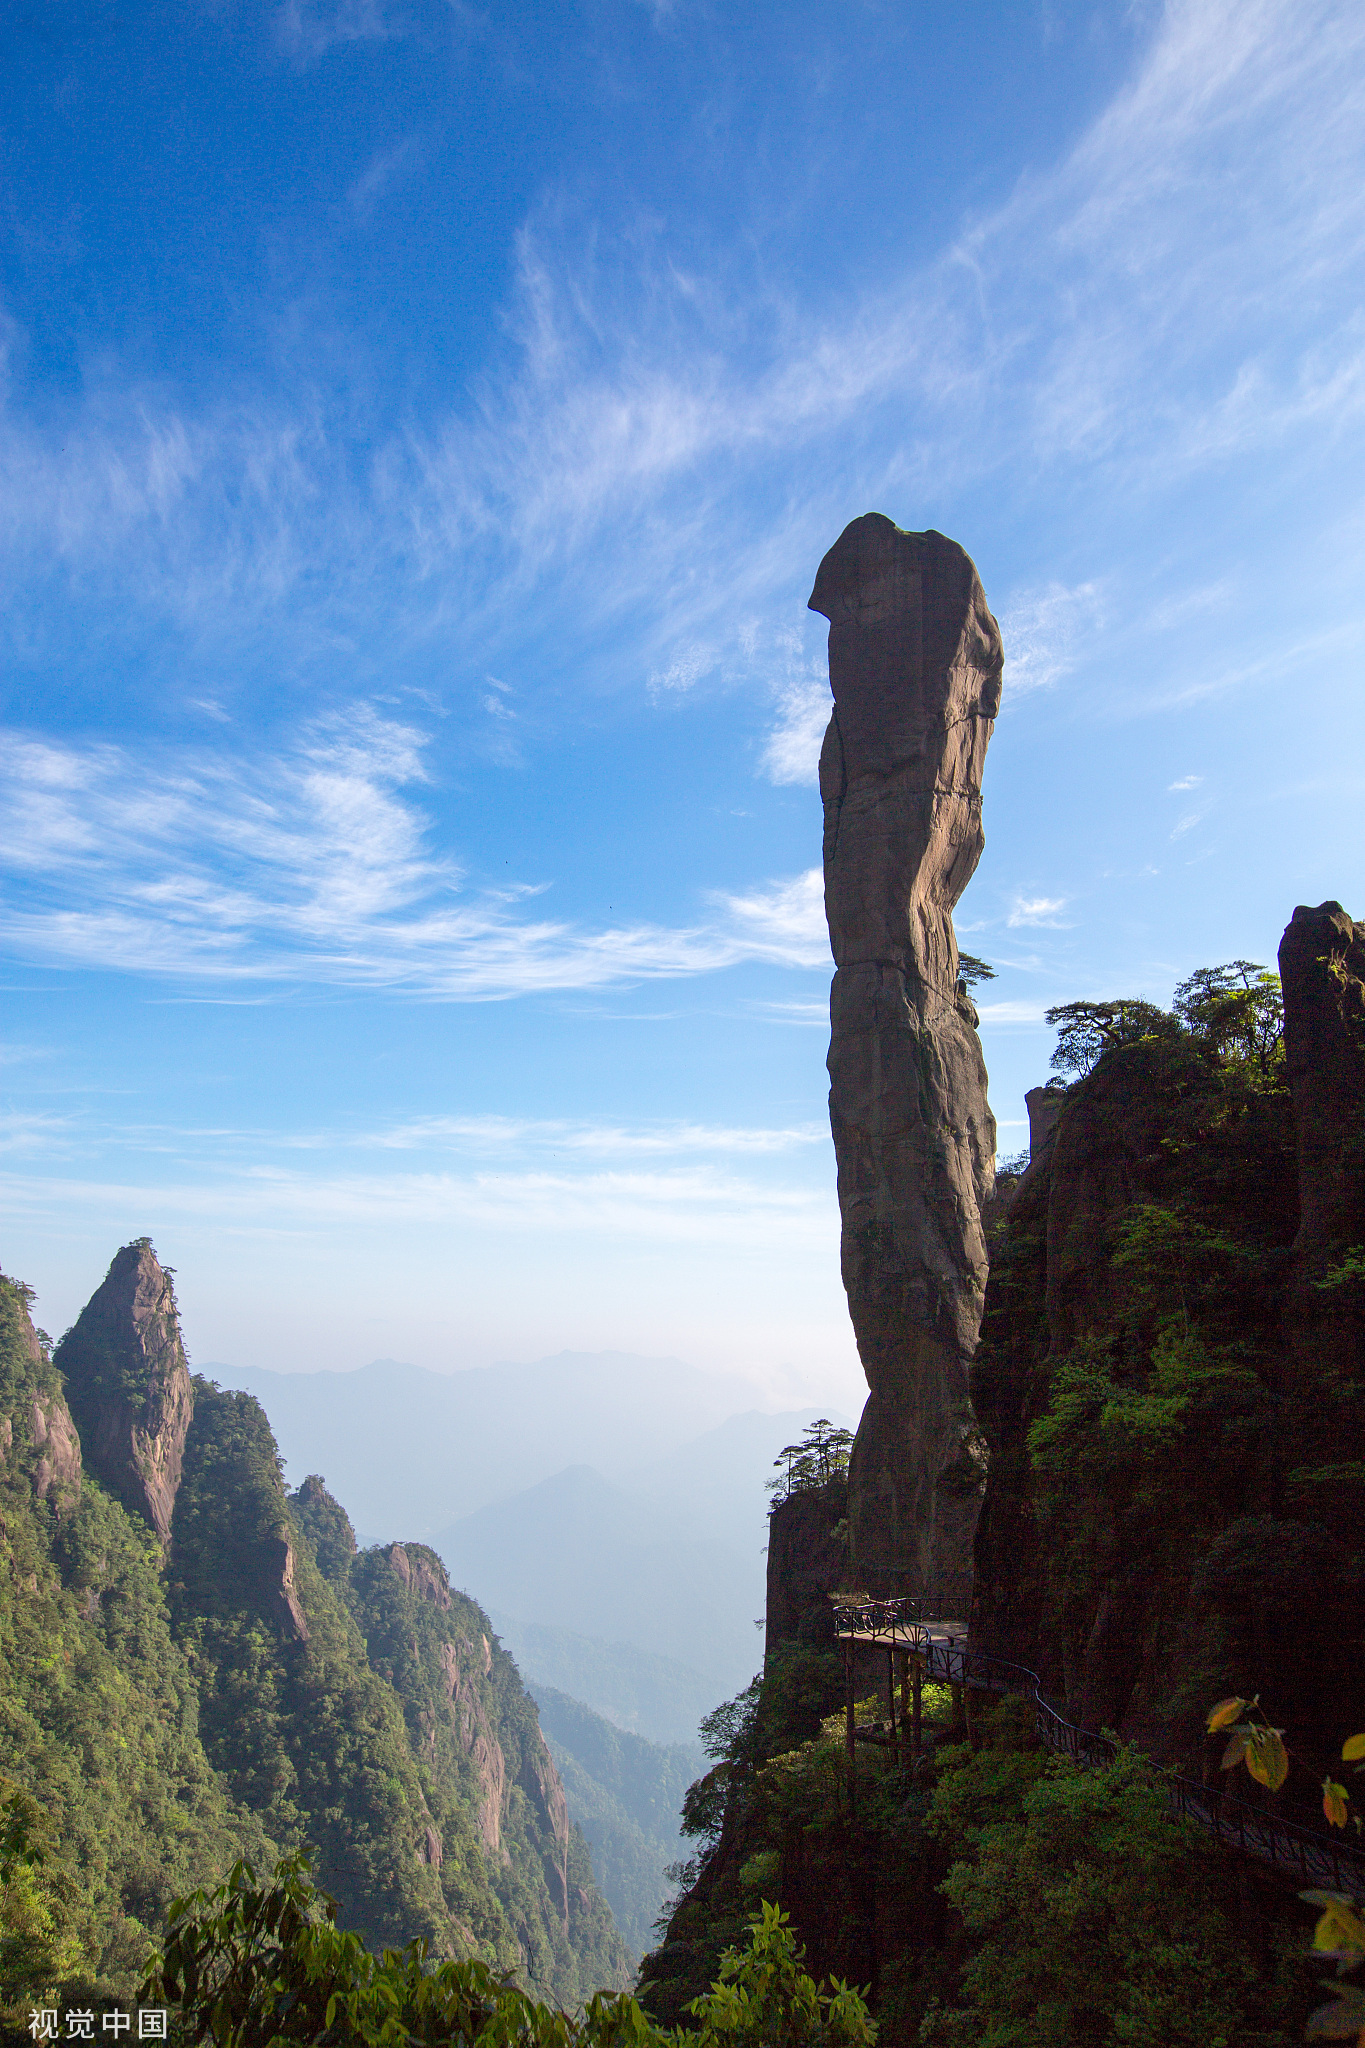 “巨蟒出山”是一个由风化和重力崩解作用而形成的巨型花岗岩石柱，柱身有数道横断裂痕，经亿万年风雨依然屹立不倒，形似一蟒破山而出，直欲腾空而去。祝育斌/视觉中国